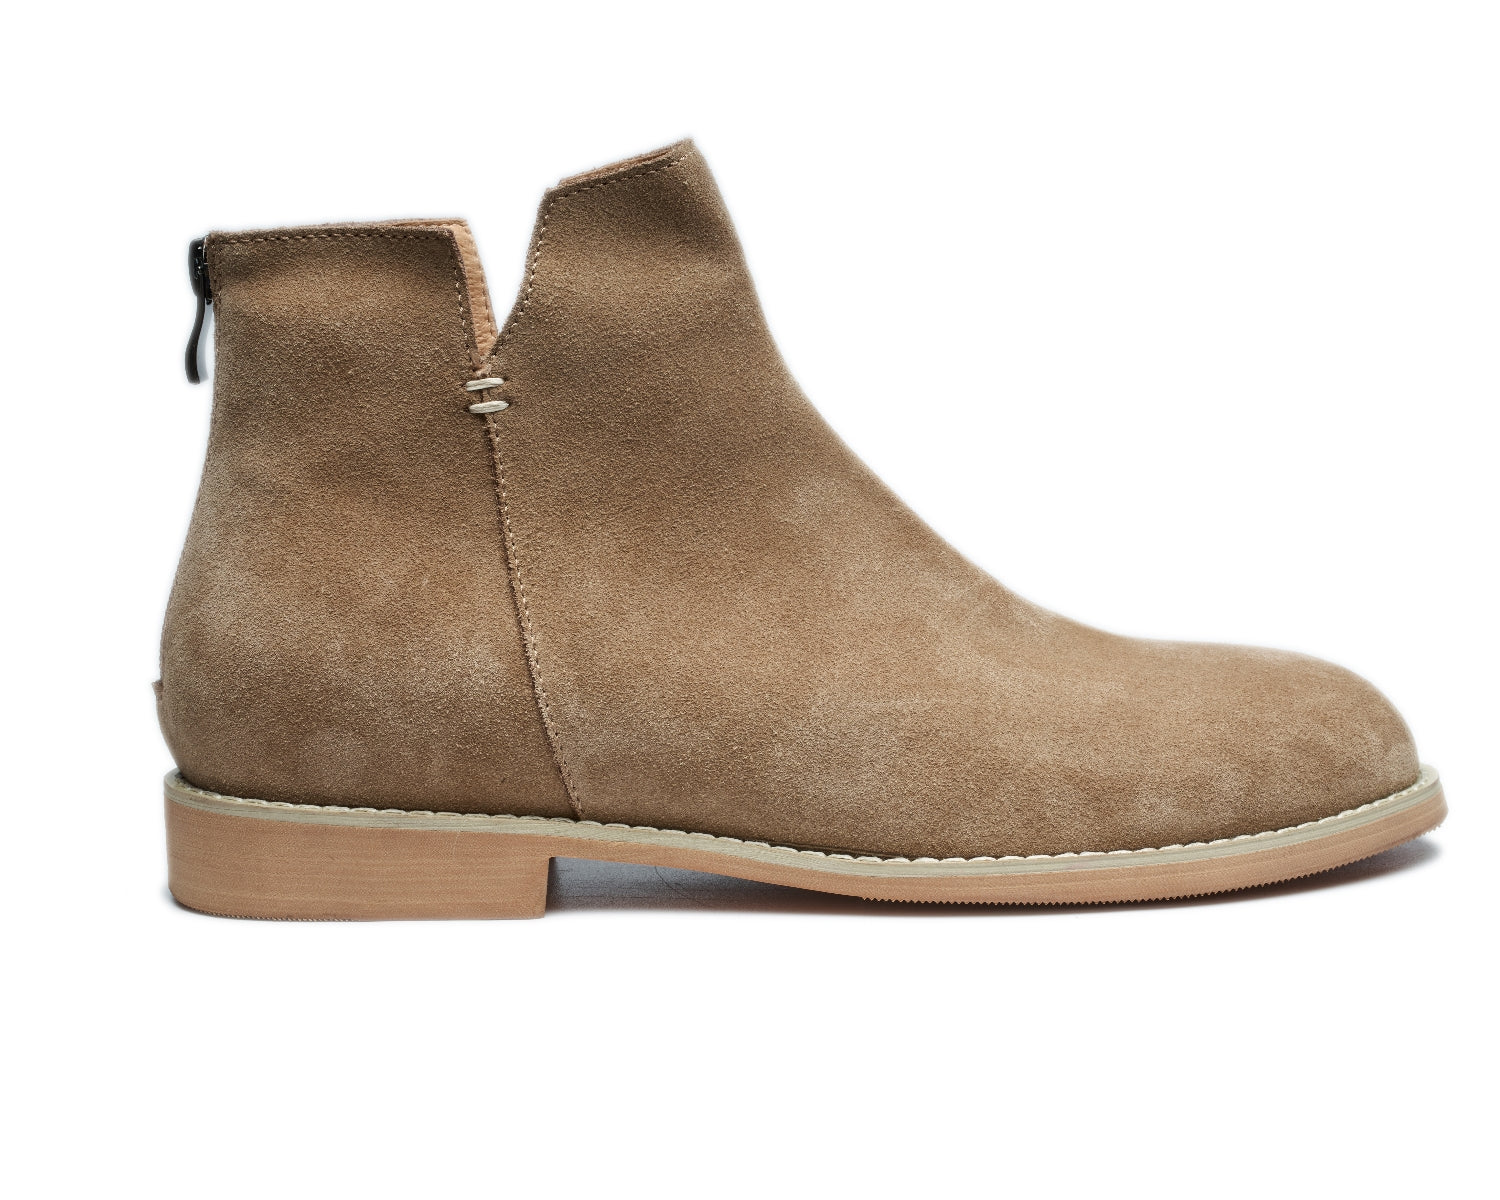 Men's Retro Simple Round Toe Versatile Genuine Leather Desert Boots5